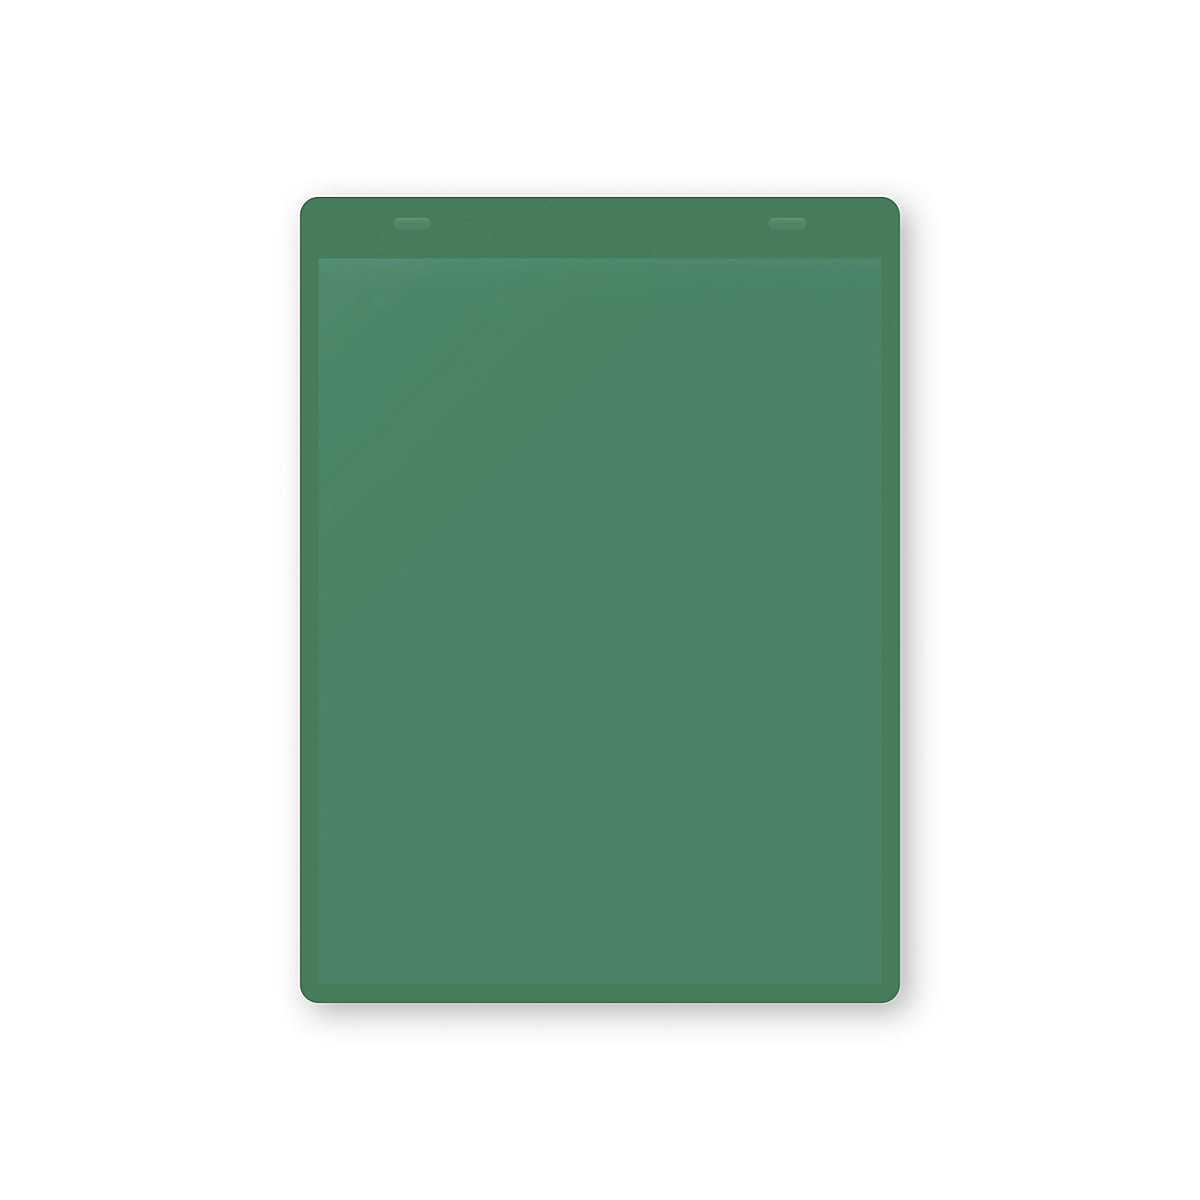 Dokumentumtartó tasakok akasztópánttal, DIN A5, álló, cs. e. 50 db, zöld